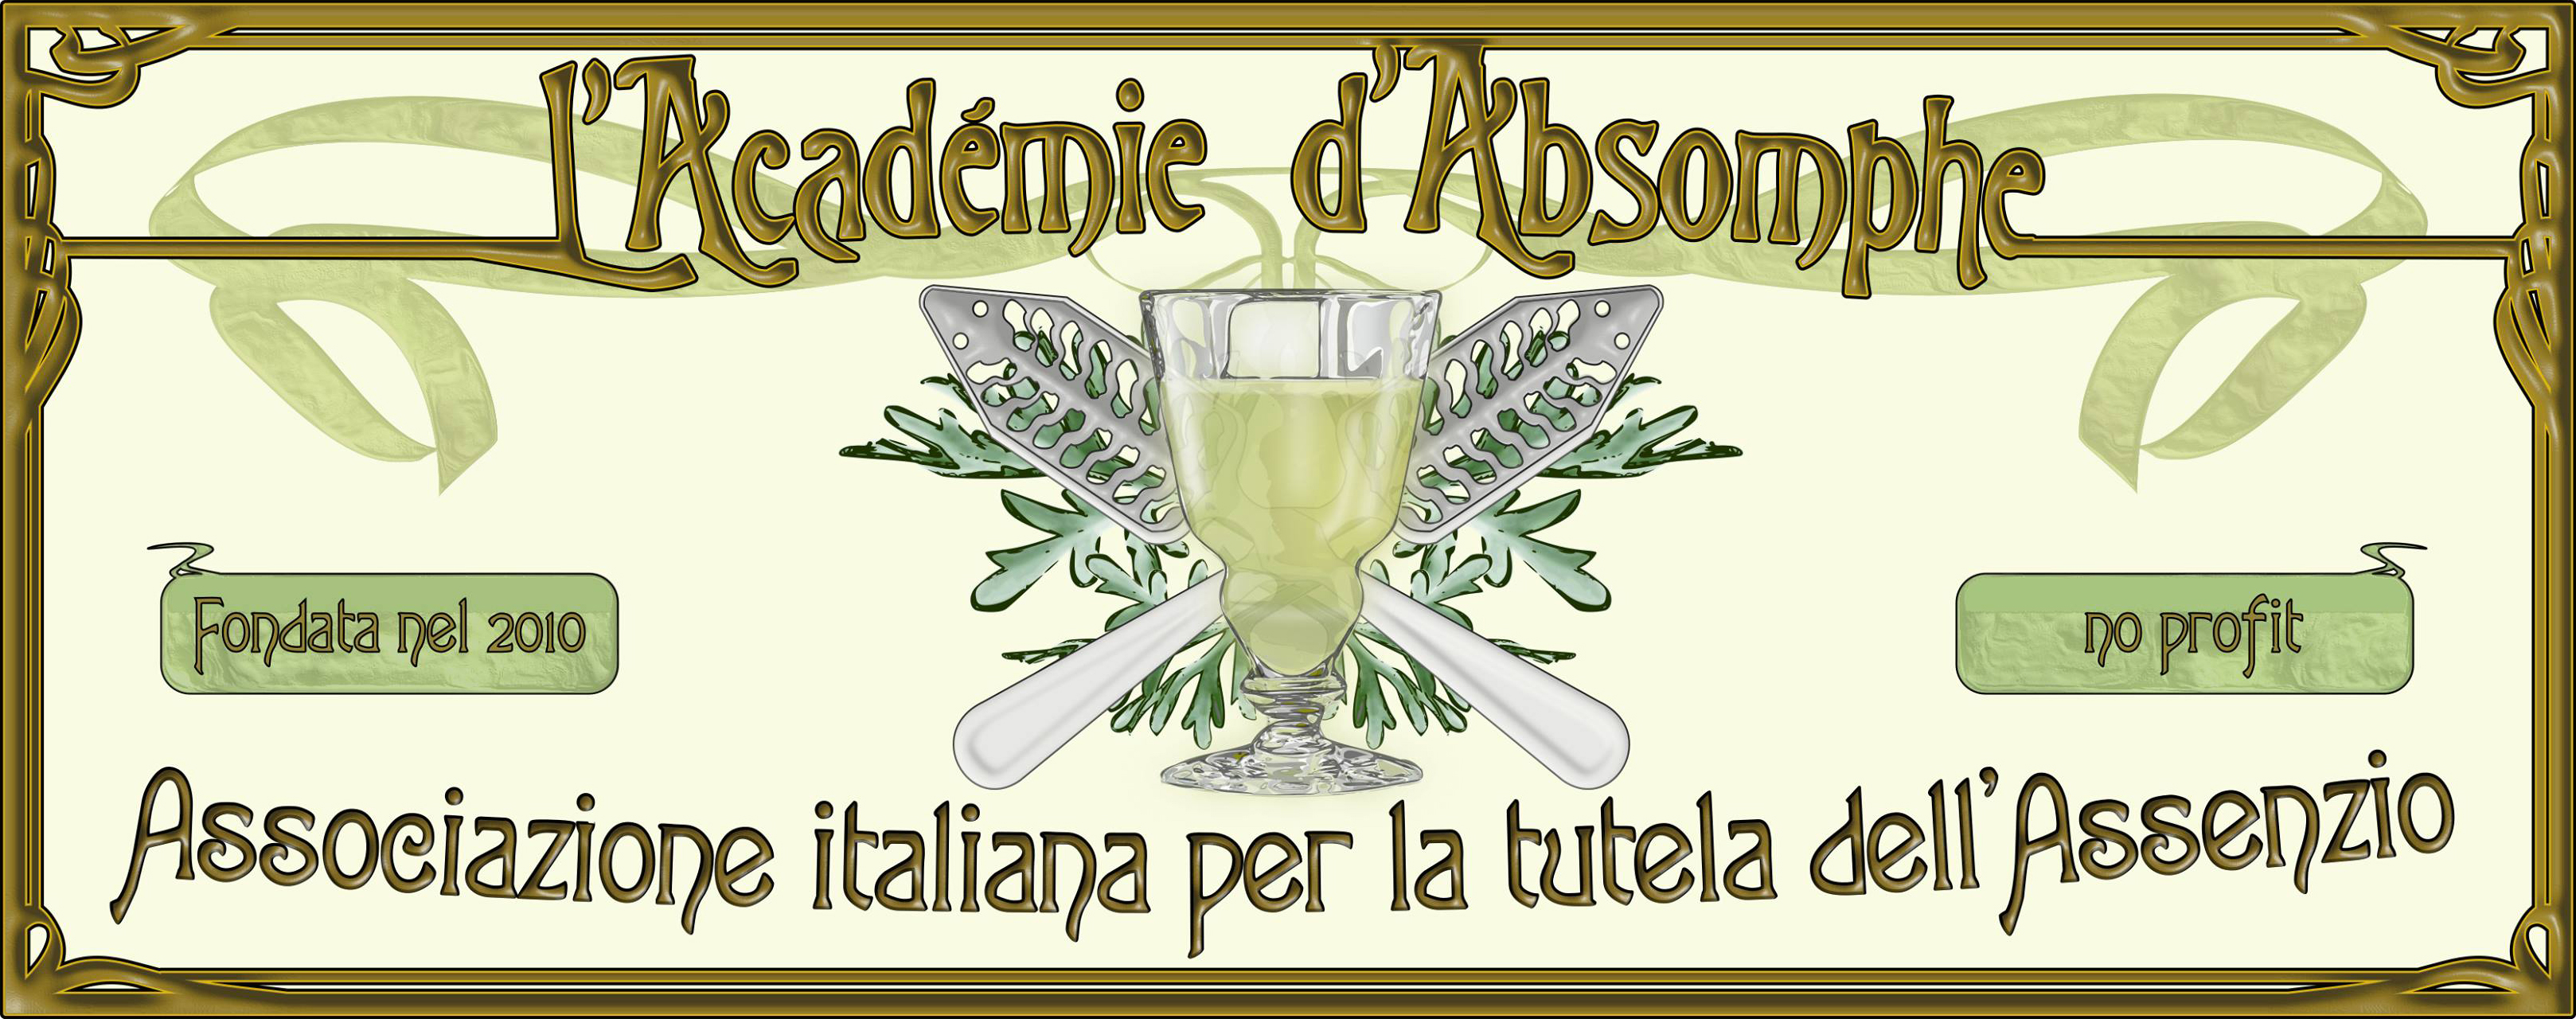 L'Académie d'Absomphe - Associazione italiana per la tutela dell'Assenzio